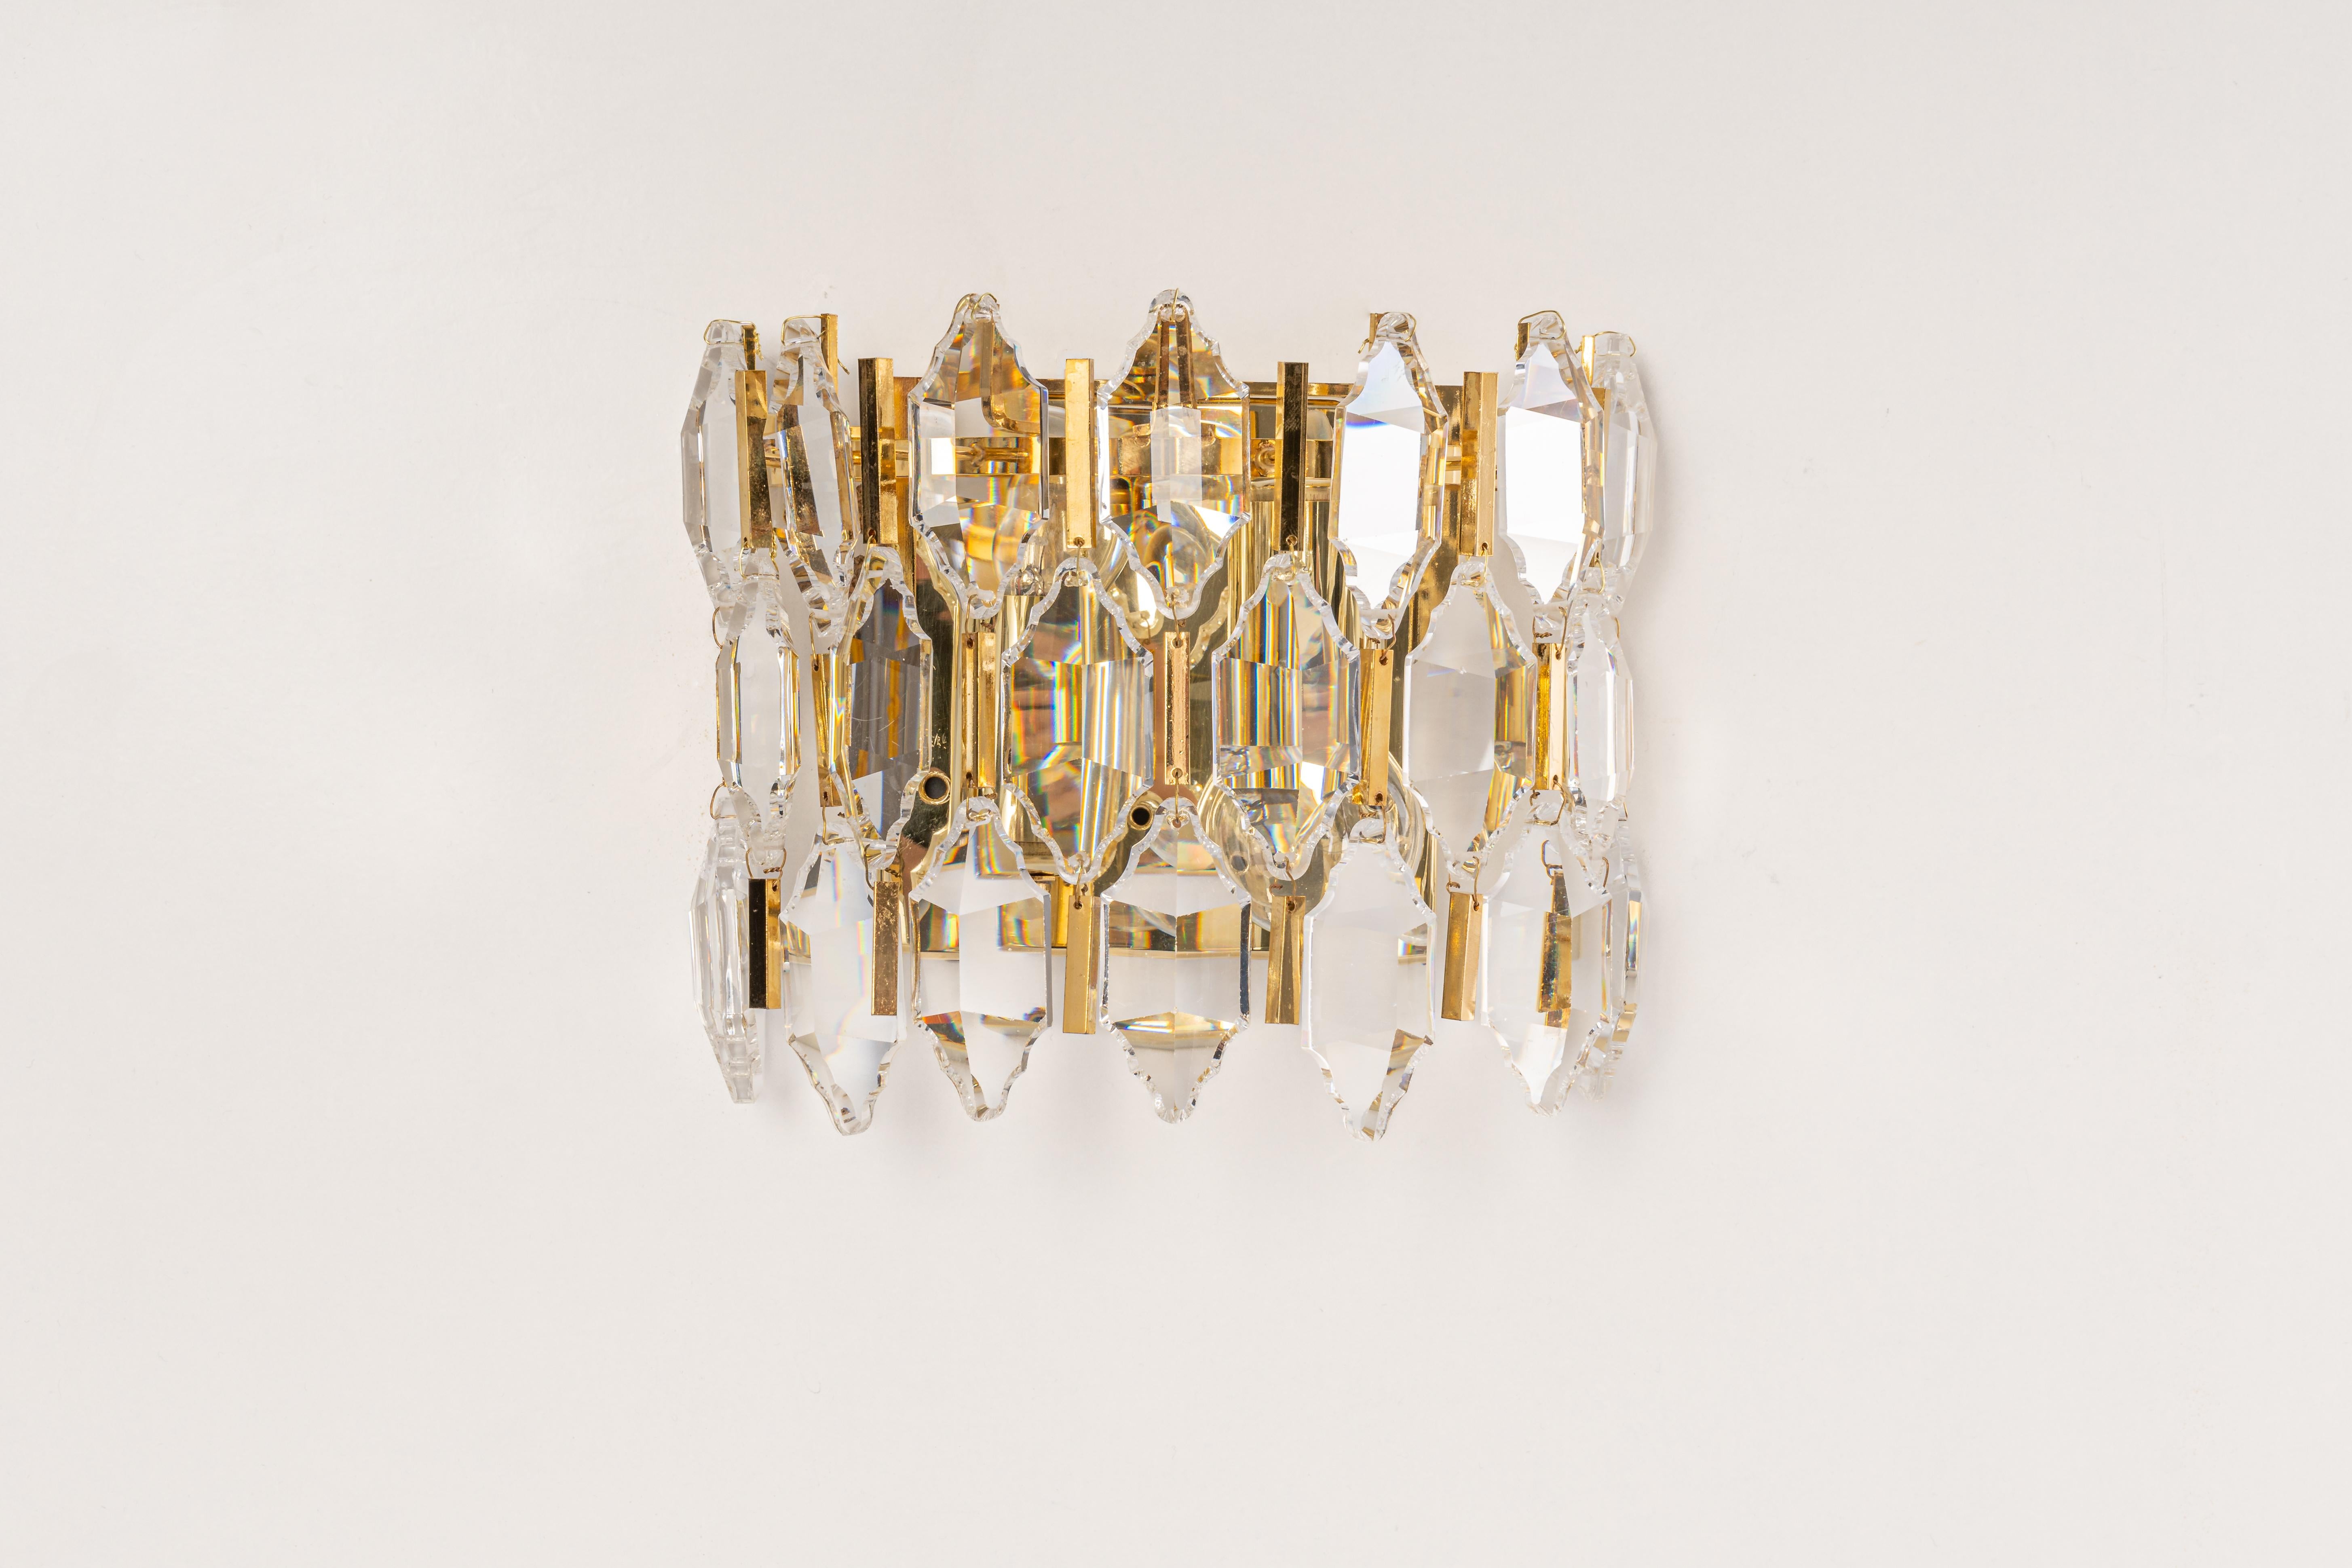 Ein atemberaubendes Paar goldener Wandleuchter von Palwa, Deutschland, ca. 1970-1979. Sie besteht aus Kristallglasstücken auf einem vergoldeten Messingrahmen.
Das Beste aus den 1970er Jahren aus Deutschland.

Schwere Qualität und in sehr gutem